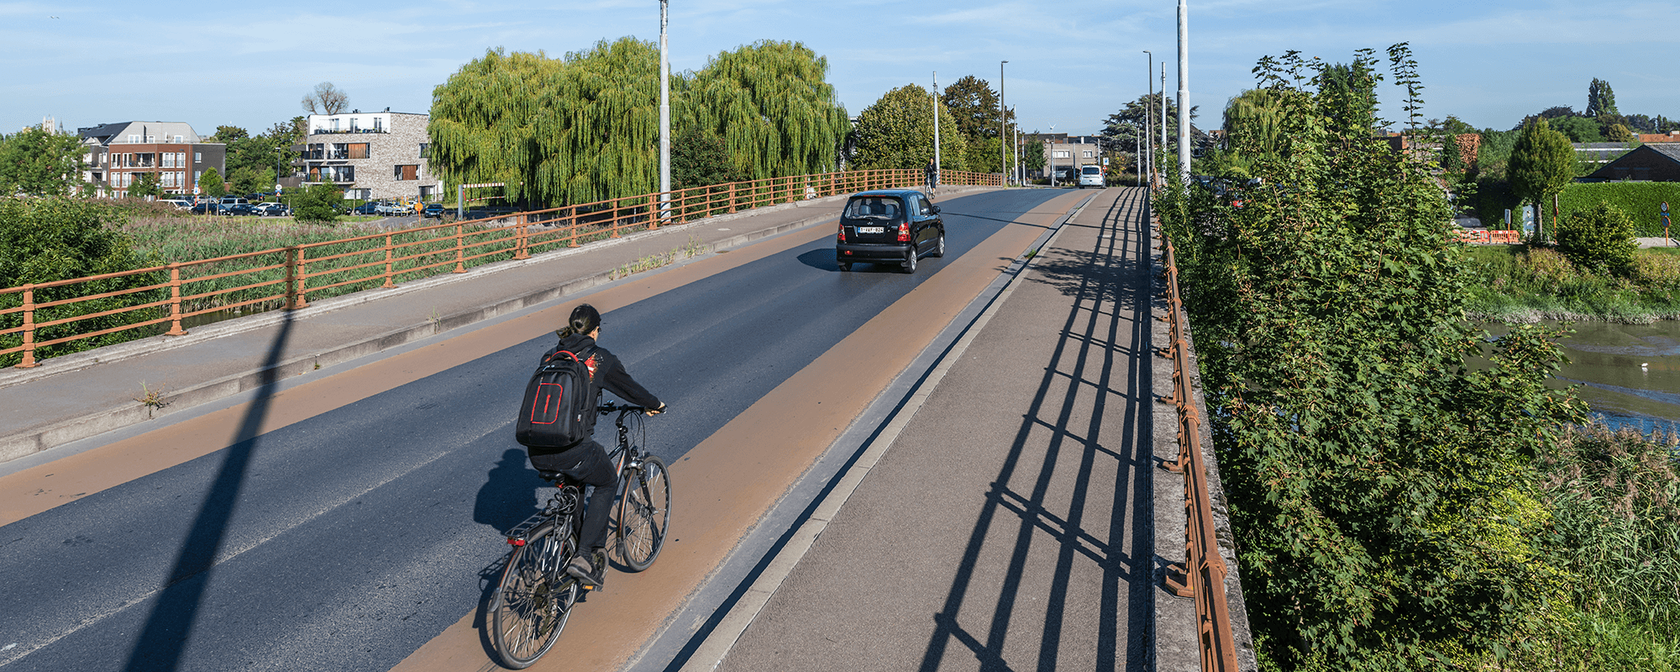 wijkmobiliteitsplan oud-gentbrugge bannerafbeelding 800px gentbrugge brug